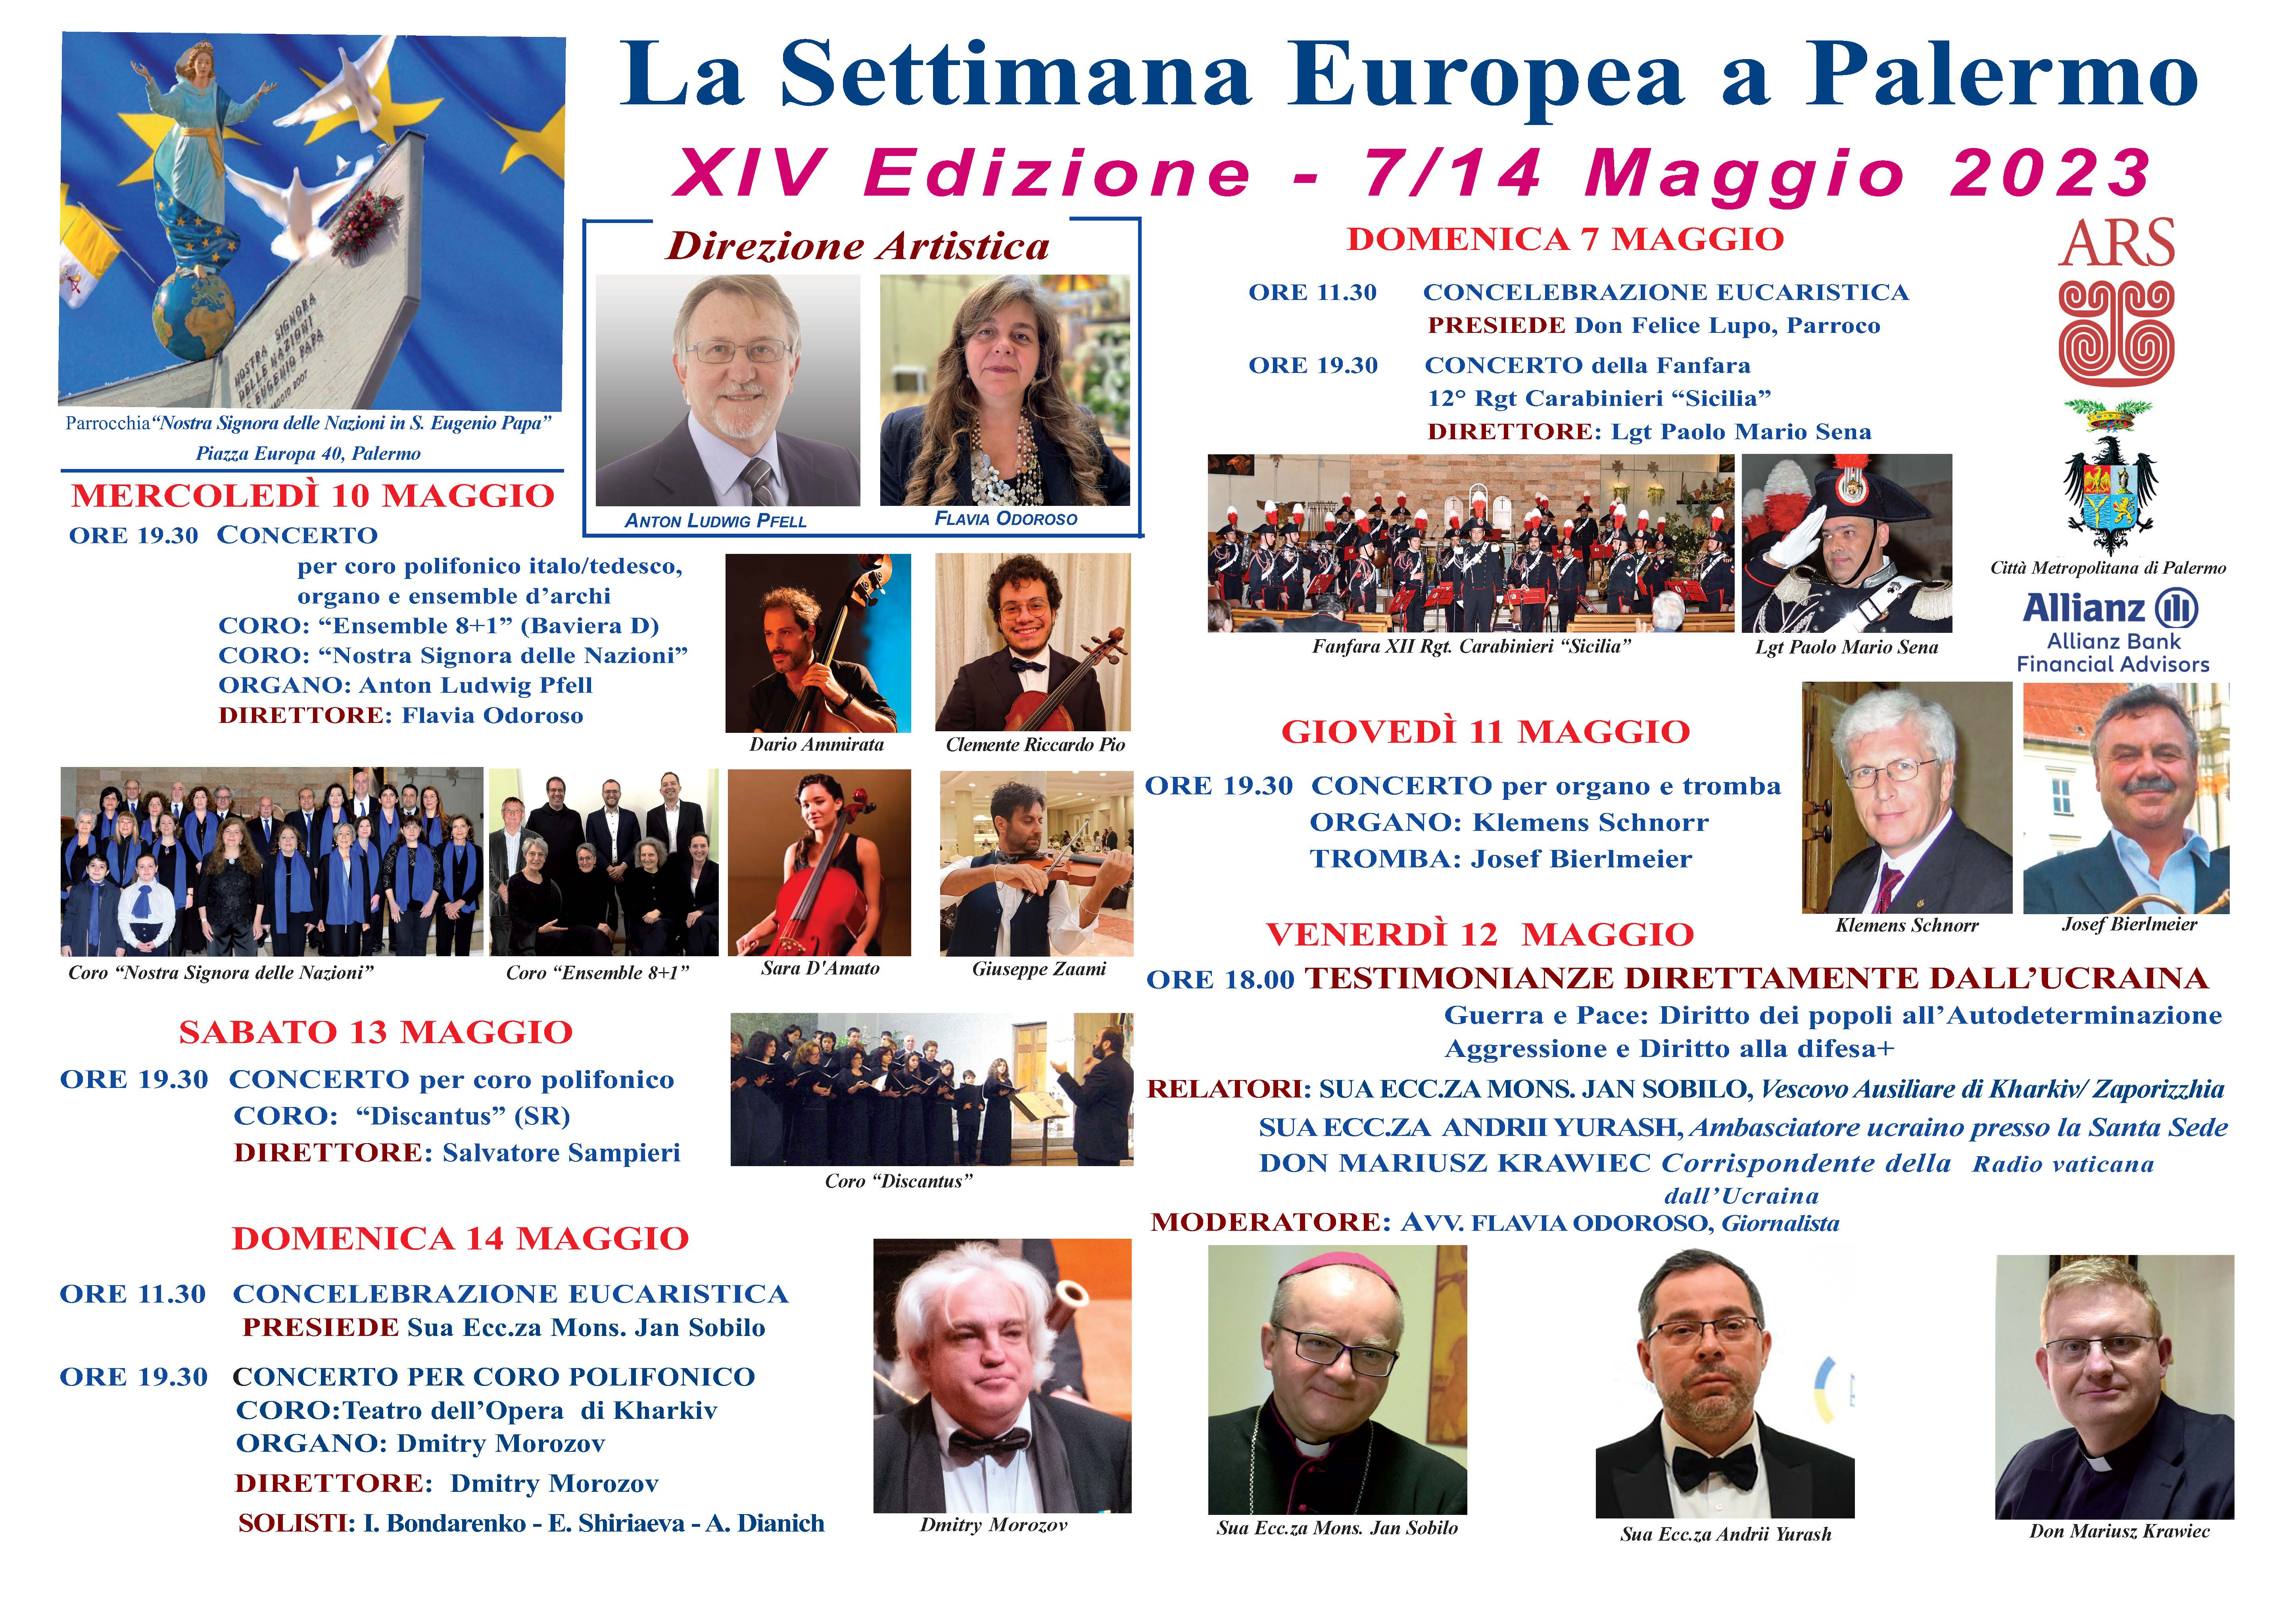 La Settimana Europea a Palermo